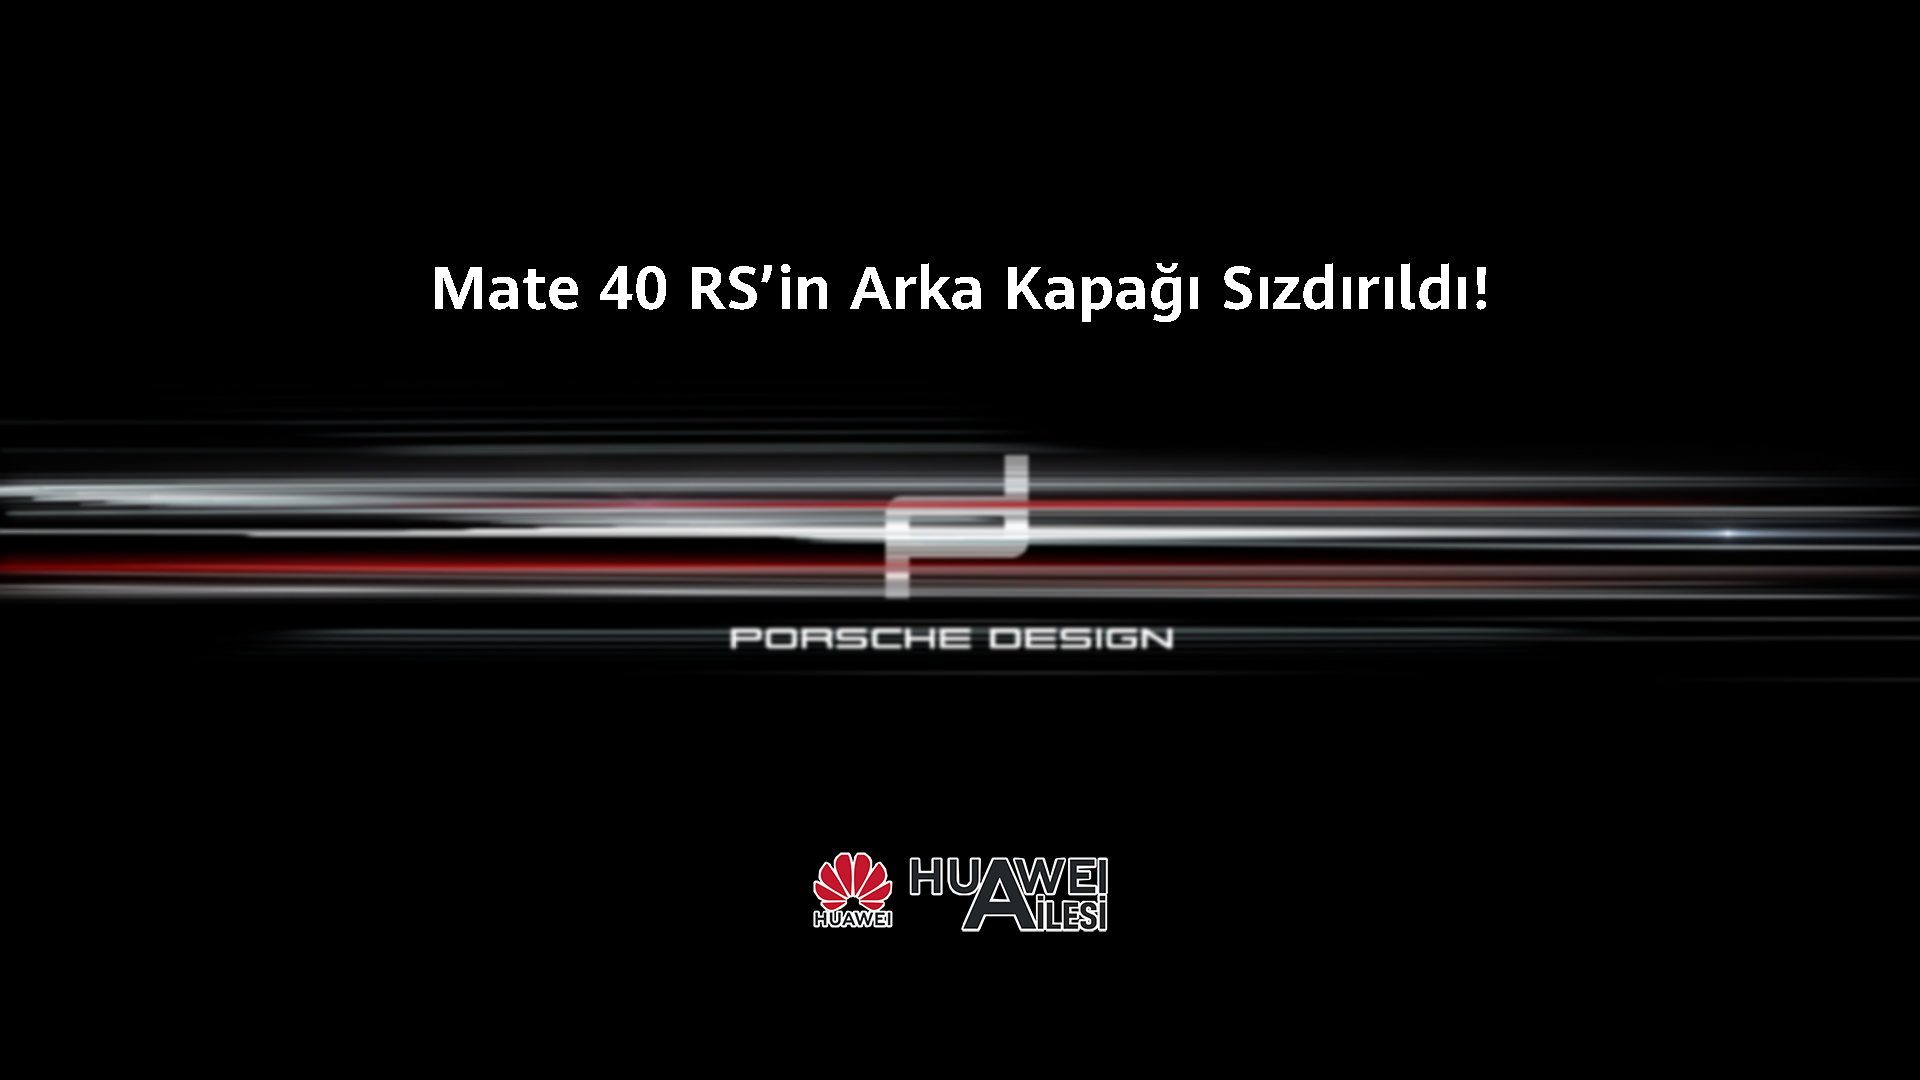 Mate 40 RS Porsche Design’ın Arka Kapağı Görüntülendi!